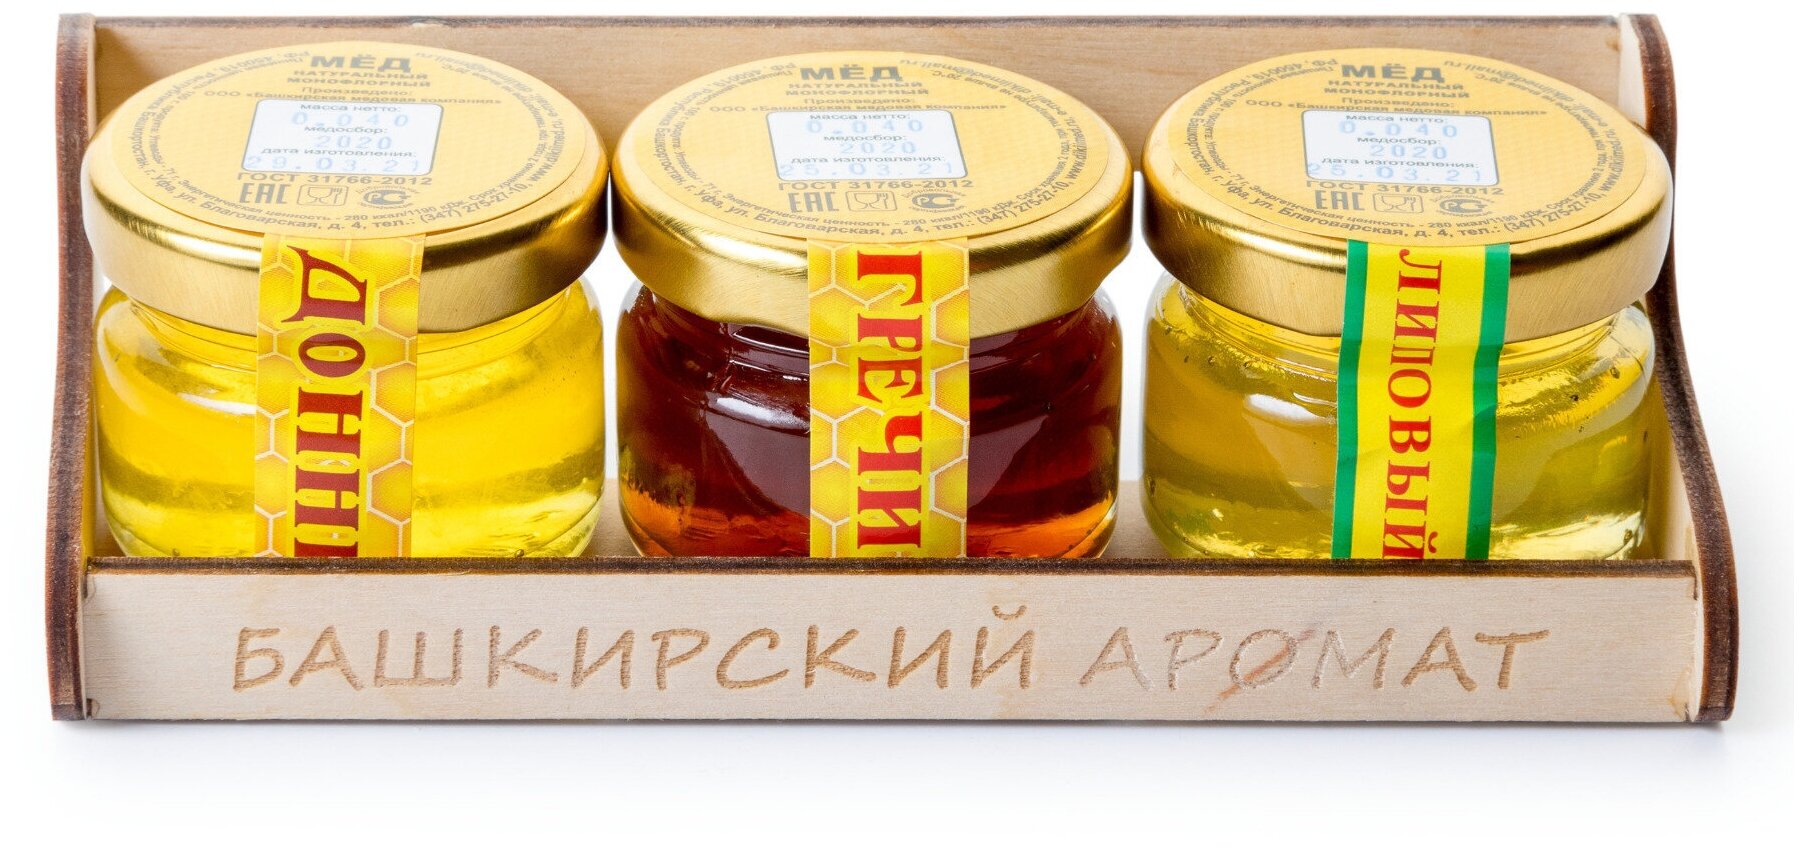 Набор меда башкирского - донниковый липовый гречишный мед в стеклянных банках по 40 гр.